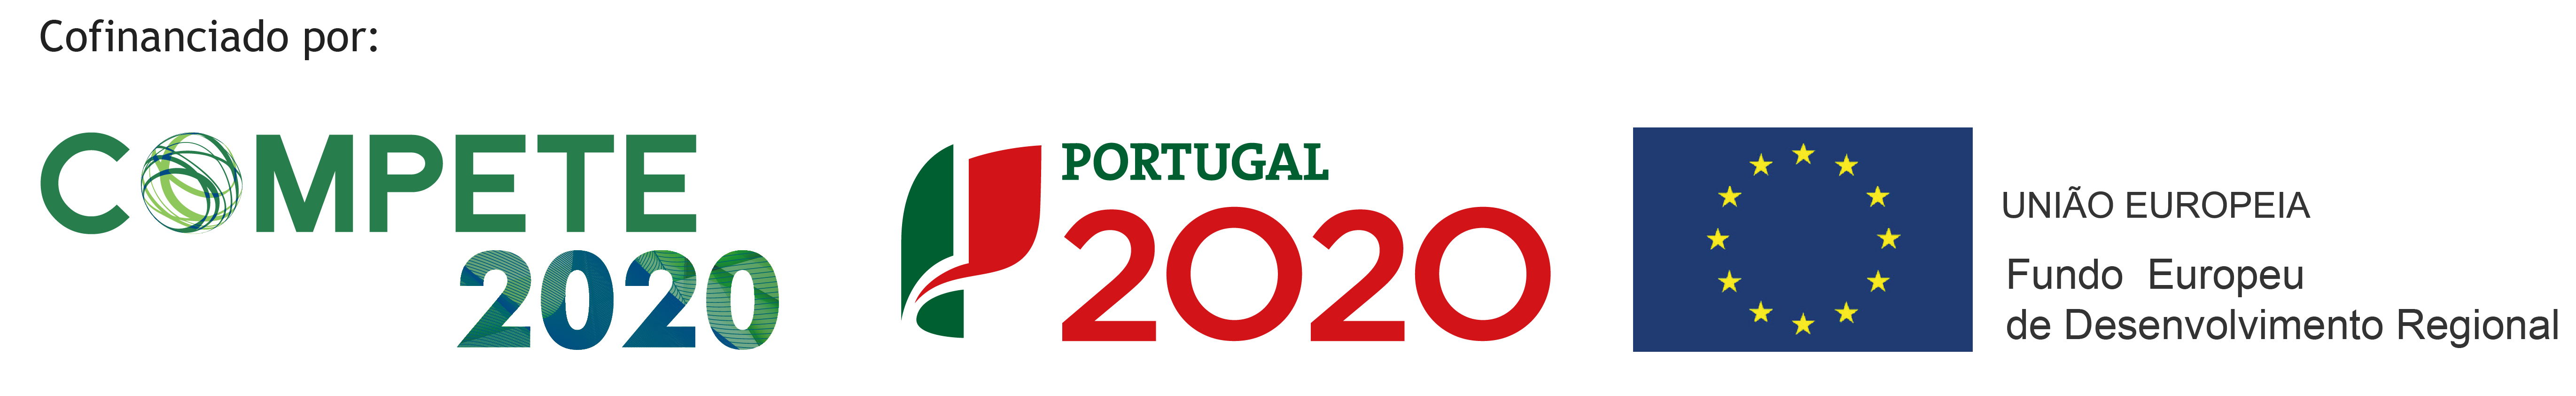 Portugal 2020 - Logotipos